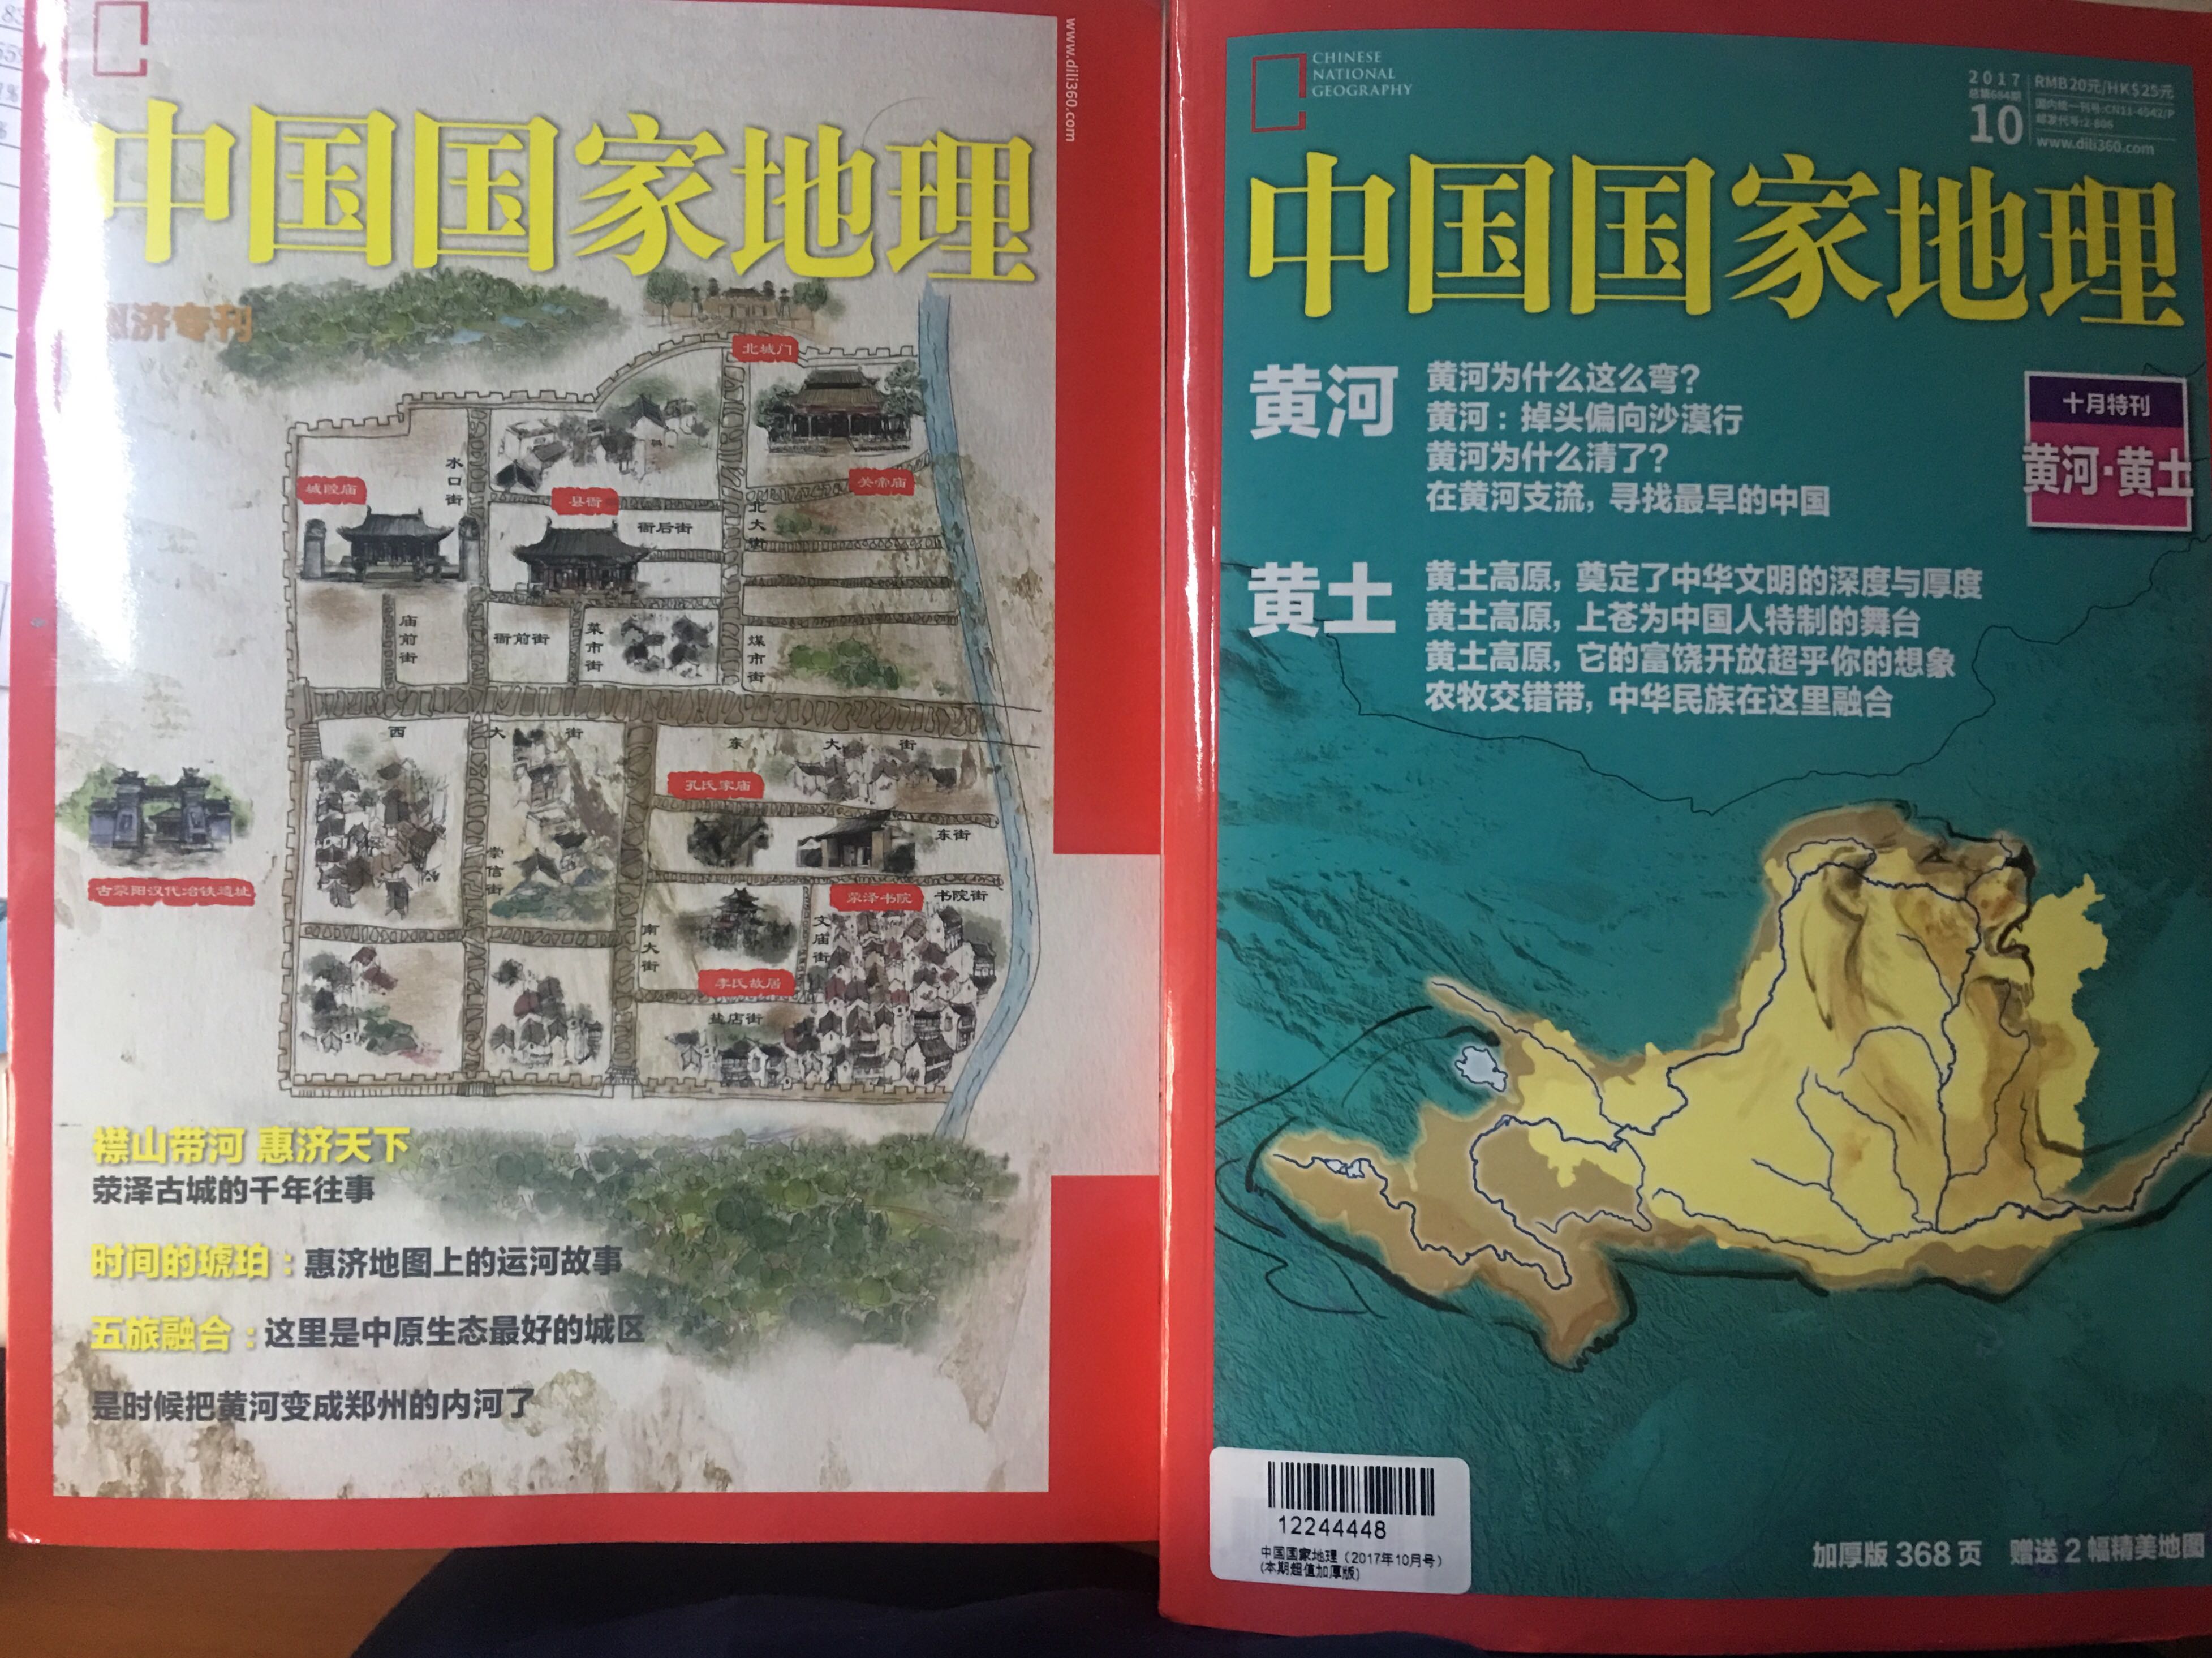 超值加厚版，详细介绍了黄河流域的地理地貌，还送了惠济专刊及黄河流域全景图。物有所值。